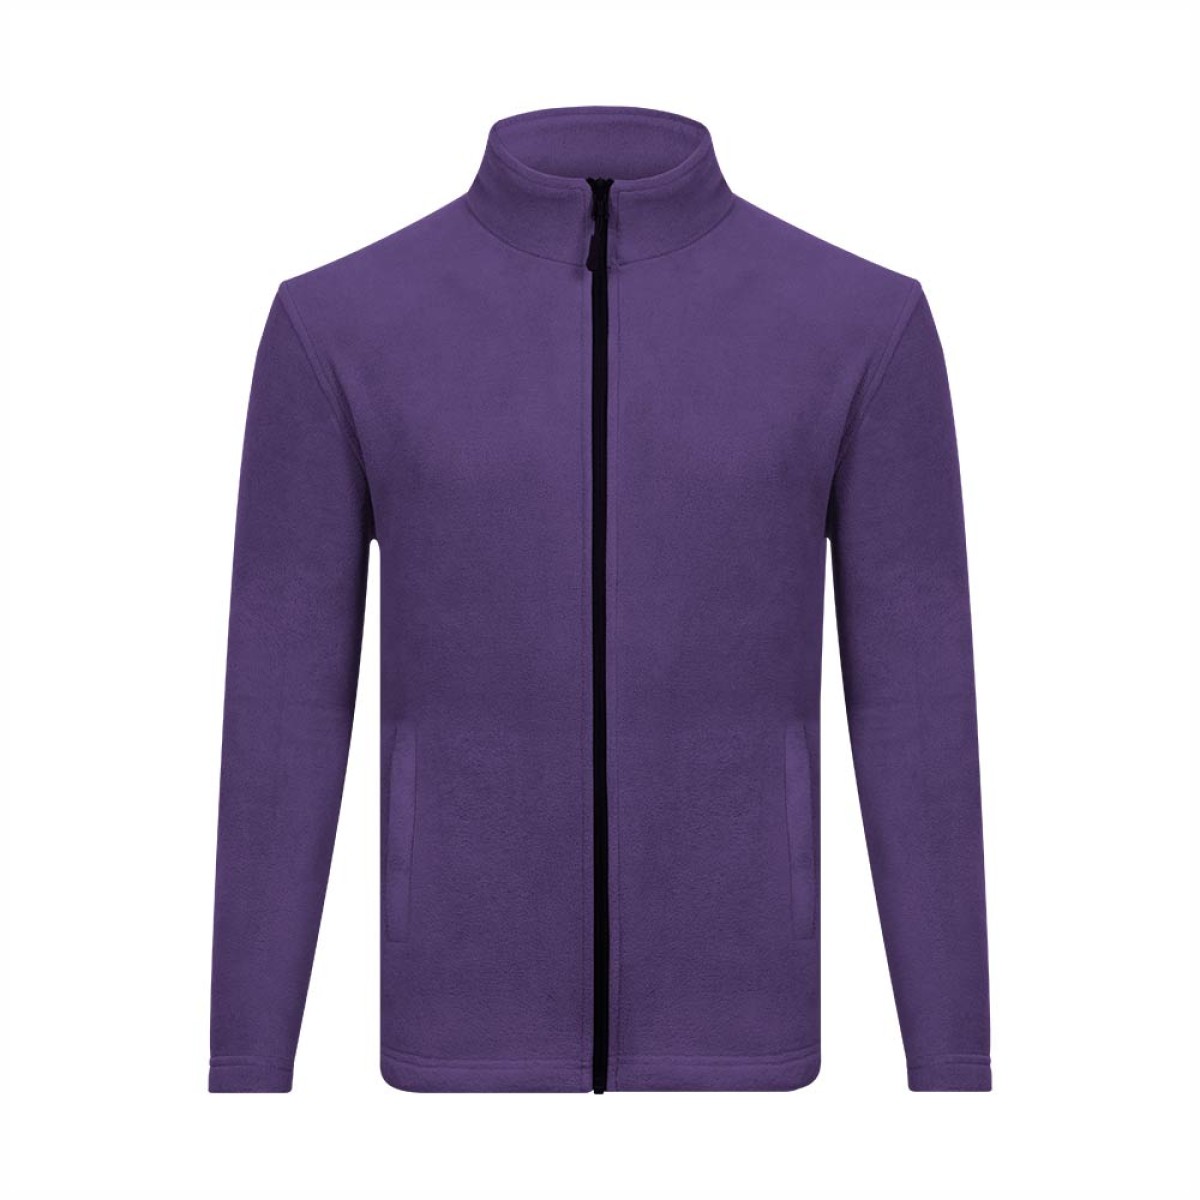 unisex-double-fleece-jacket-kufj32332-winter-wear